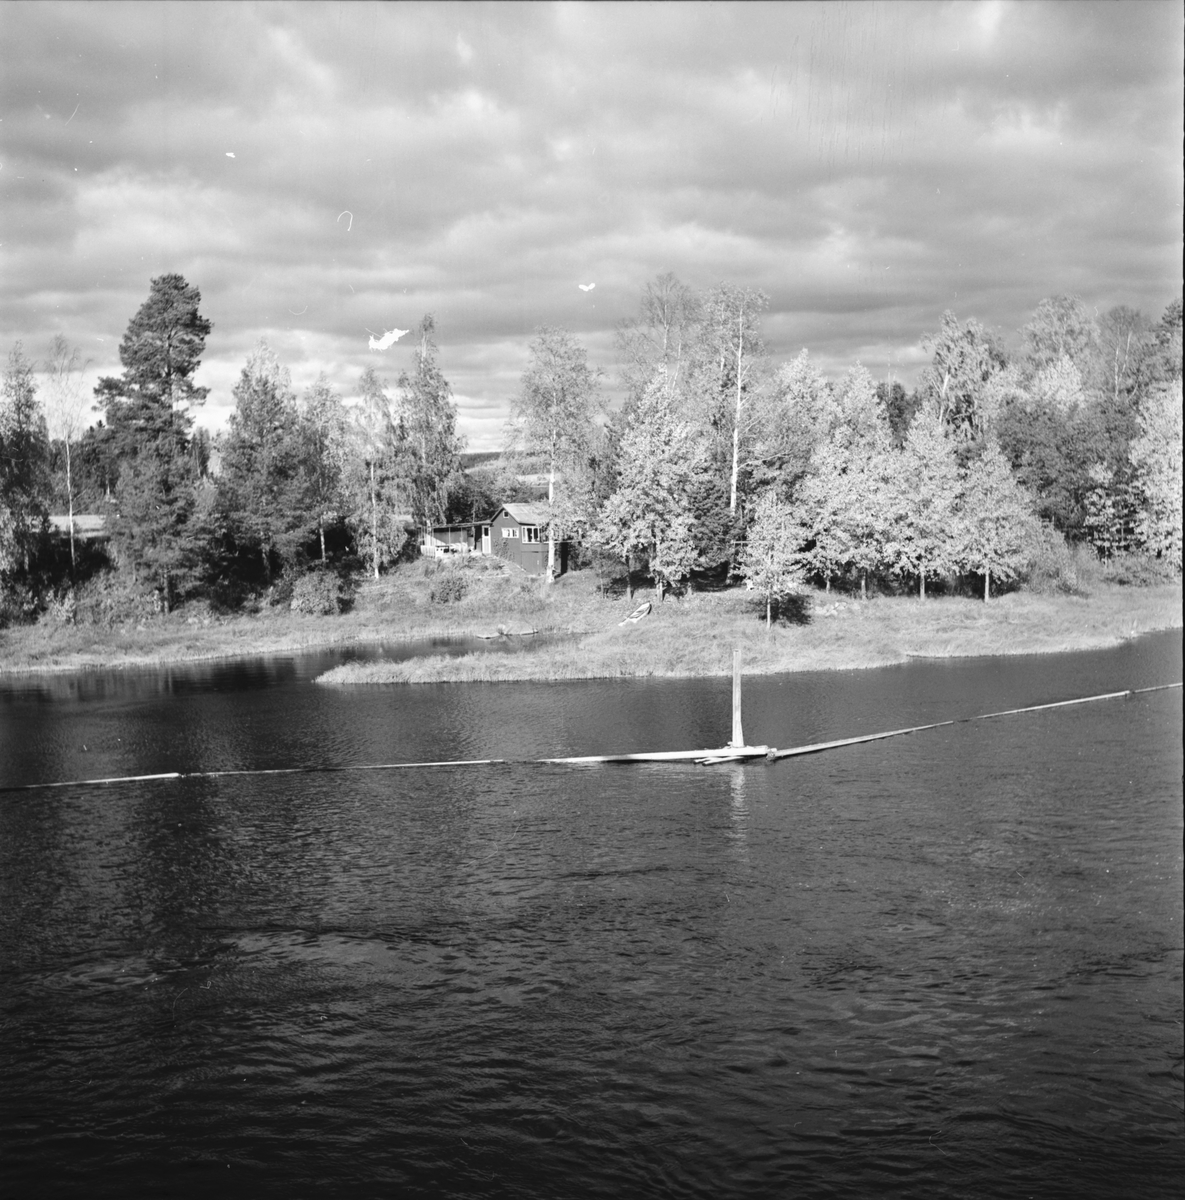 Ljusnan o Voxnan,
vid Bollnäs,
6 Okt 1965